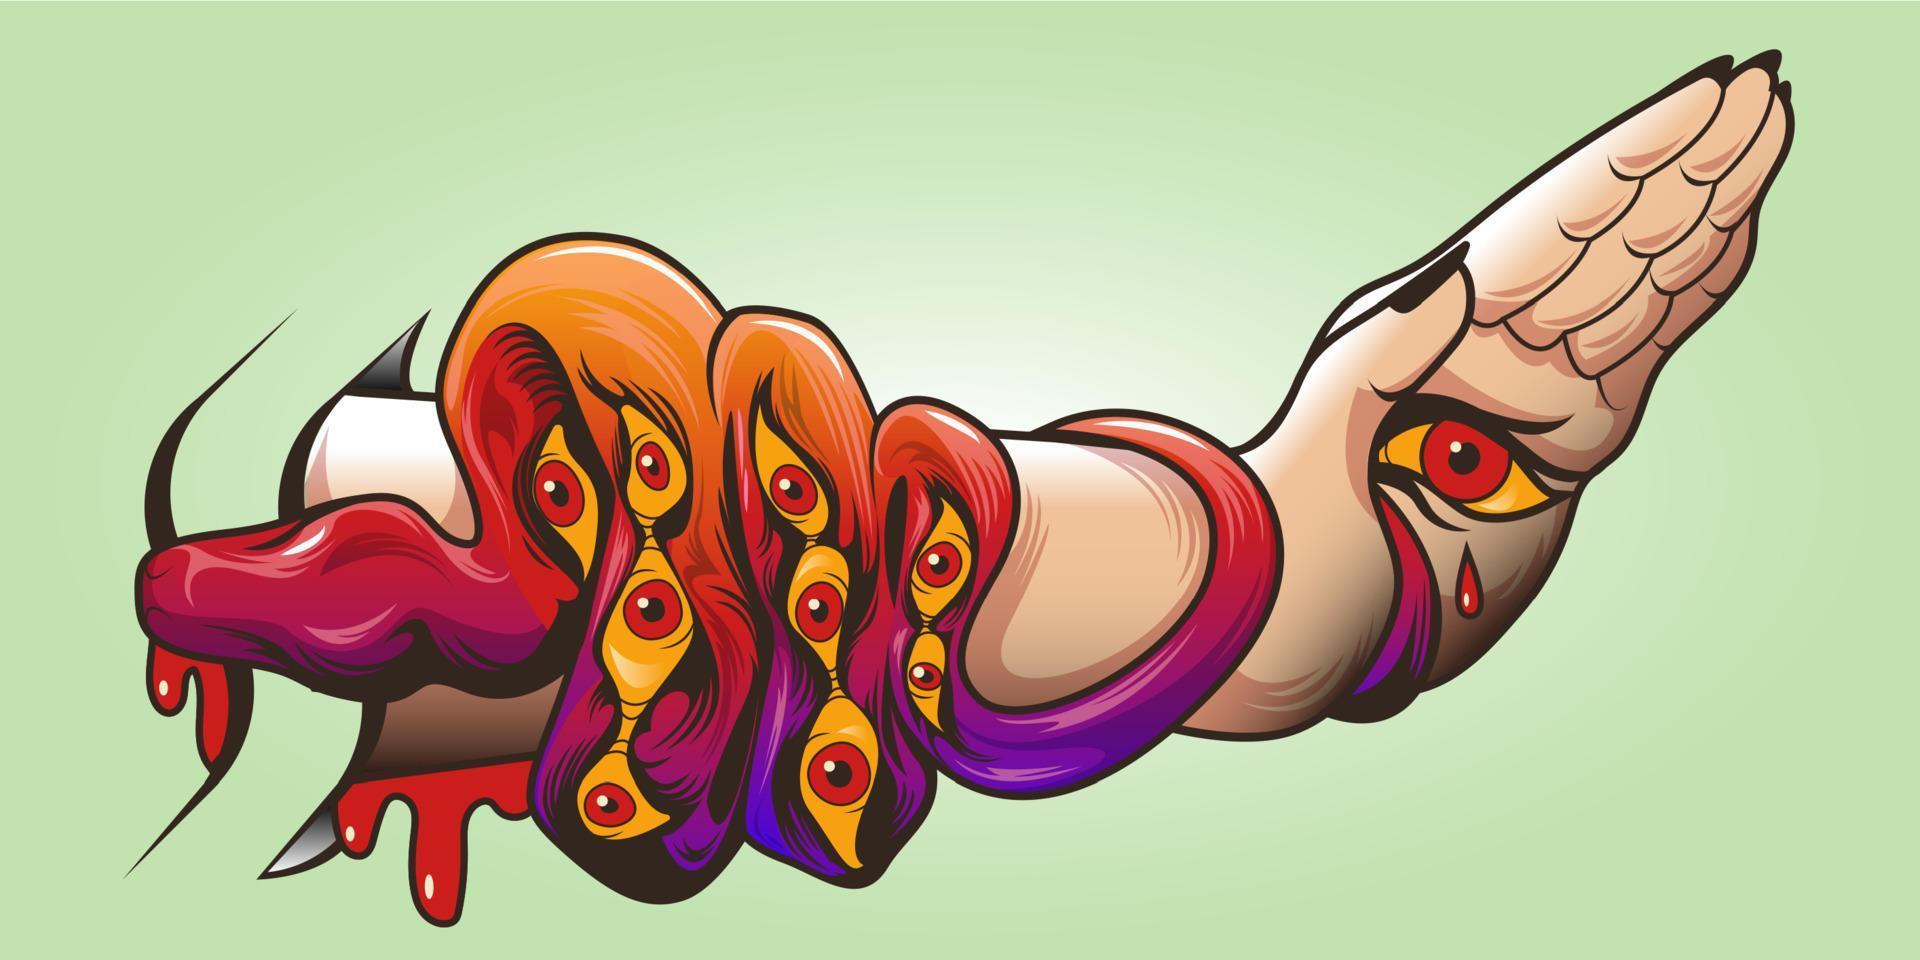 arte del tatuaje con serpiente, ojos en la piel y mano de mujer vector